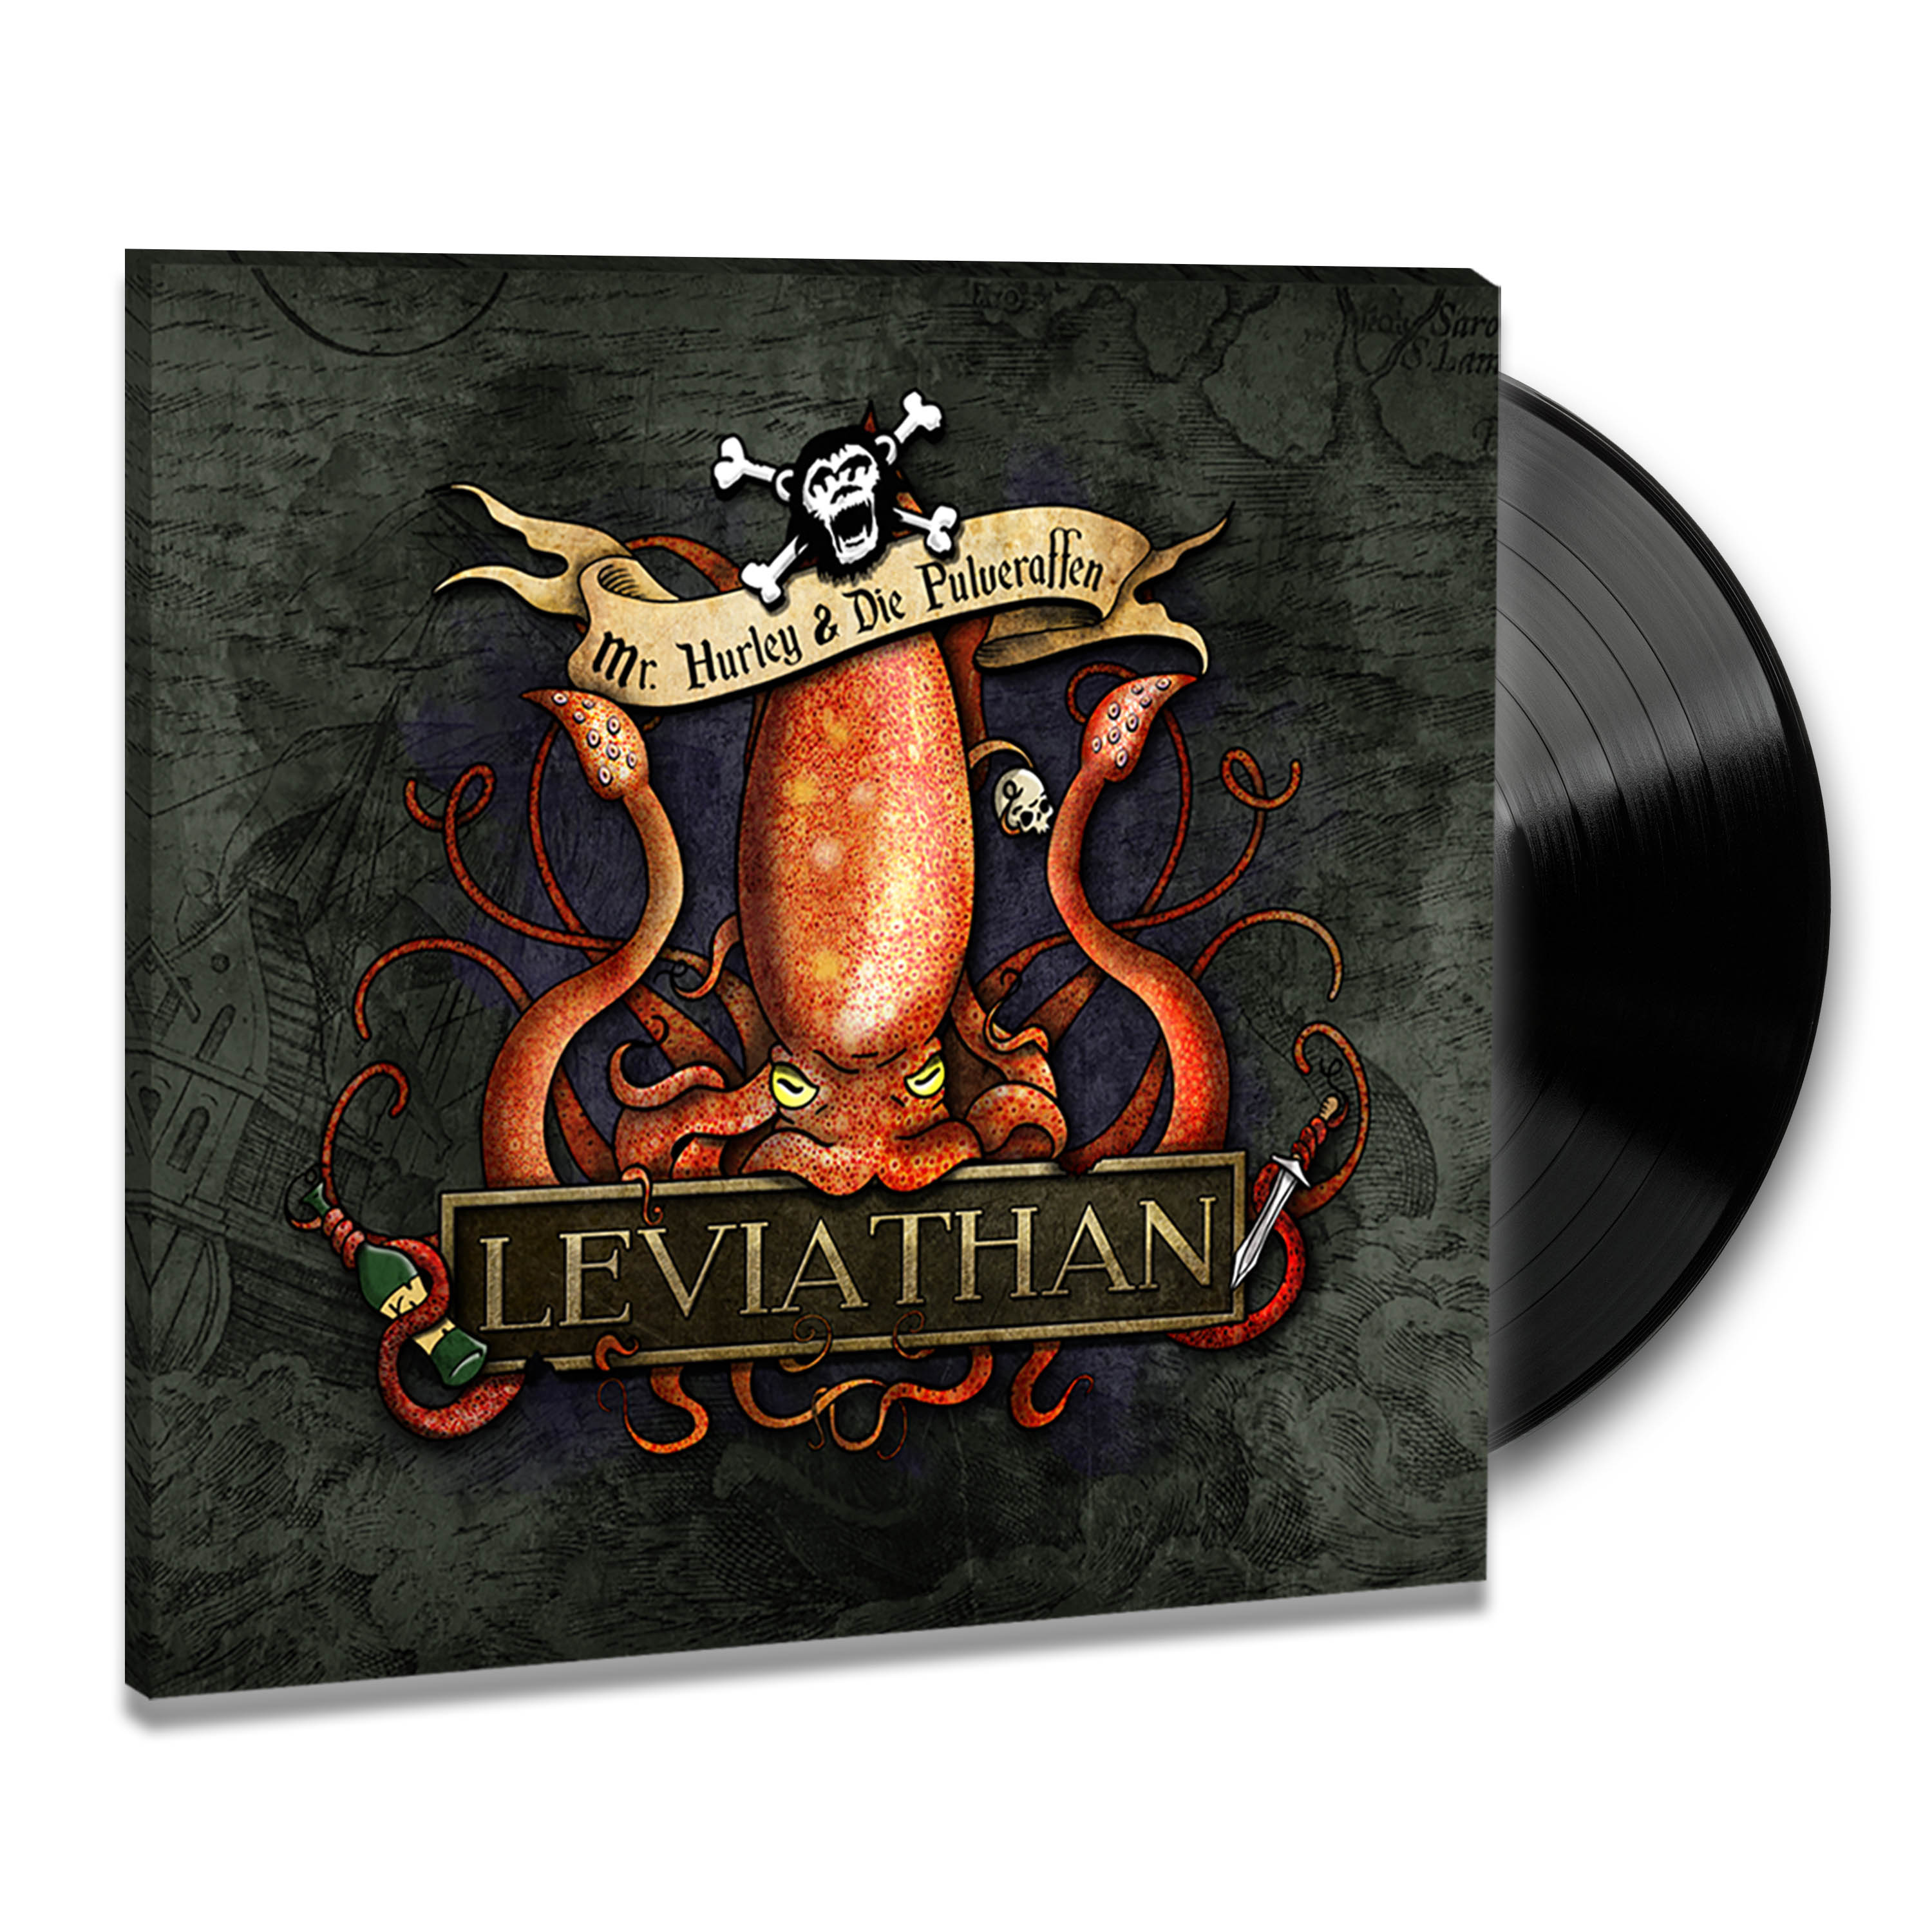 Mr. Hurley - - (Vinyl) & Die Pulveraffen Leviathan